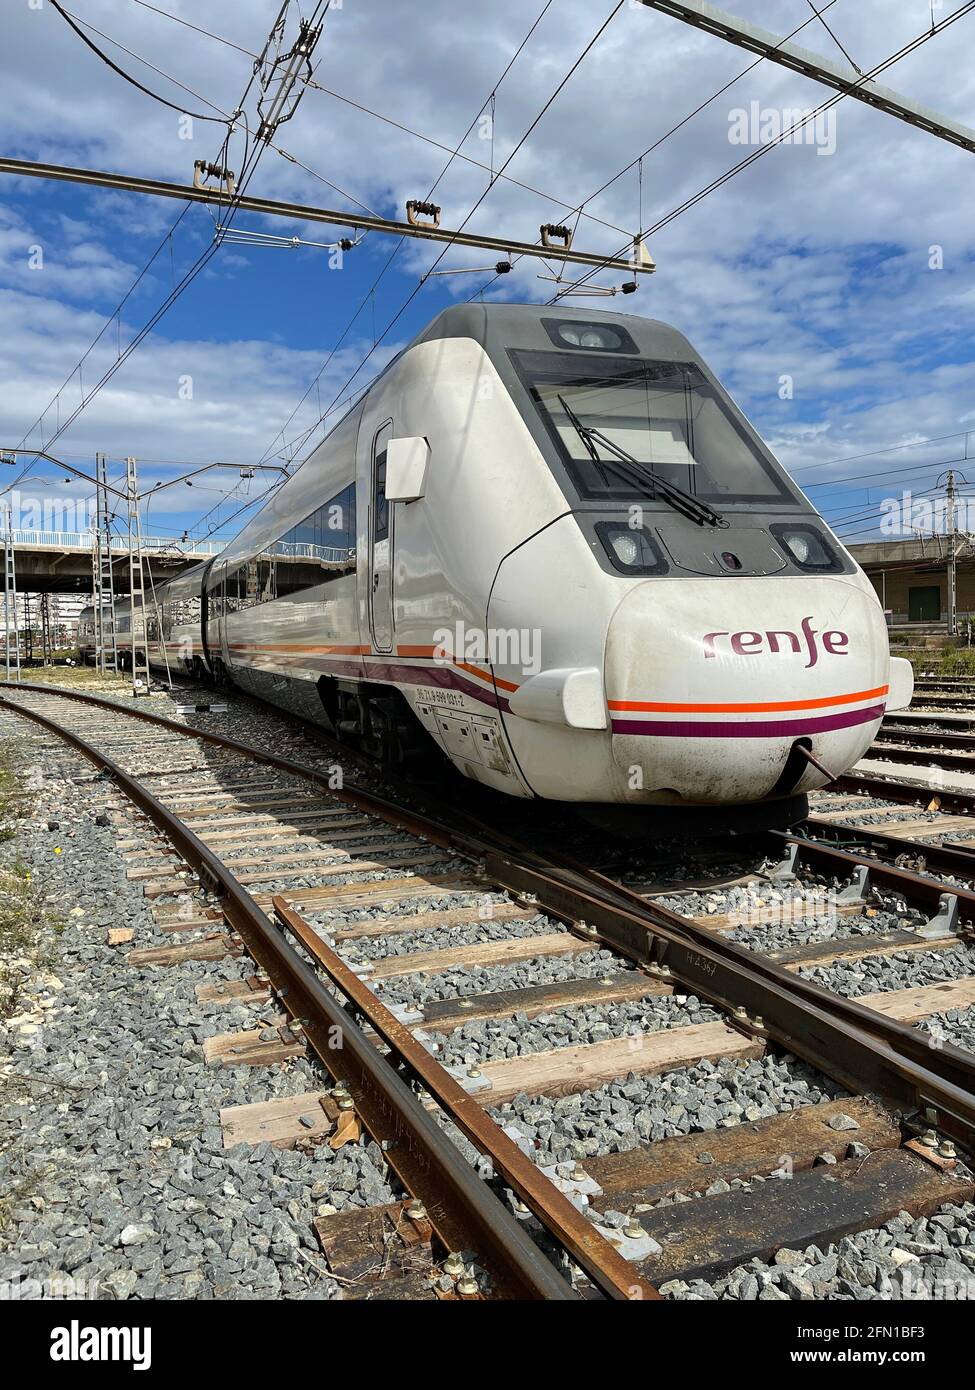 Spanish regional train running on the track Stock Photo